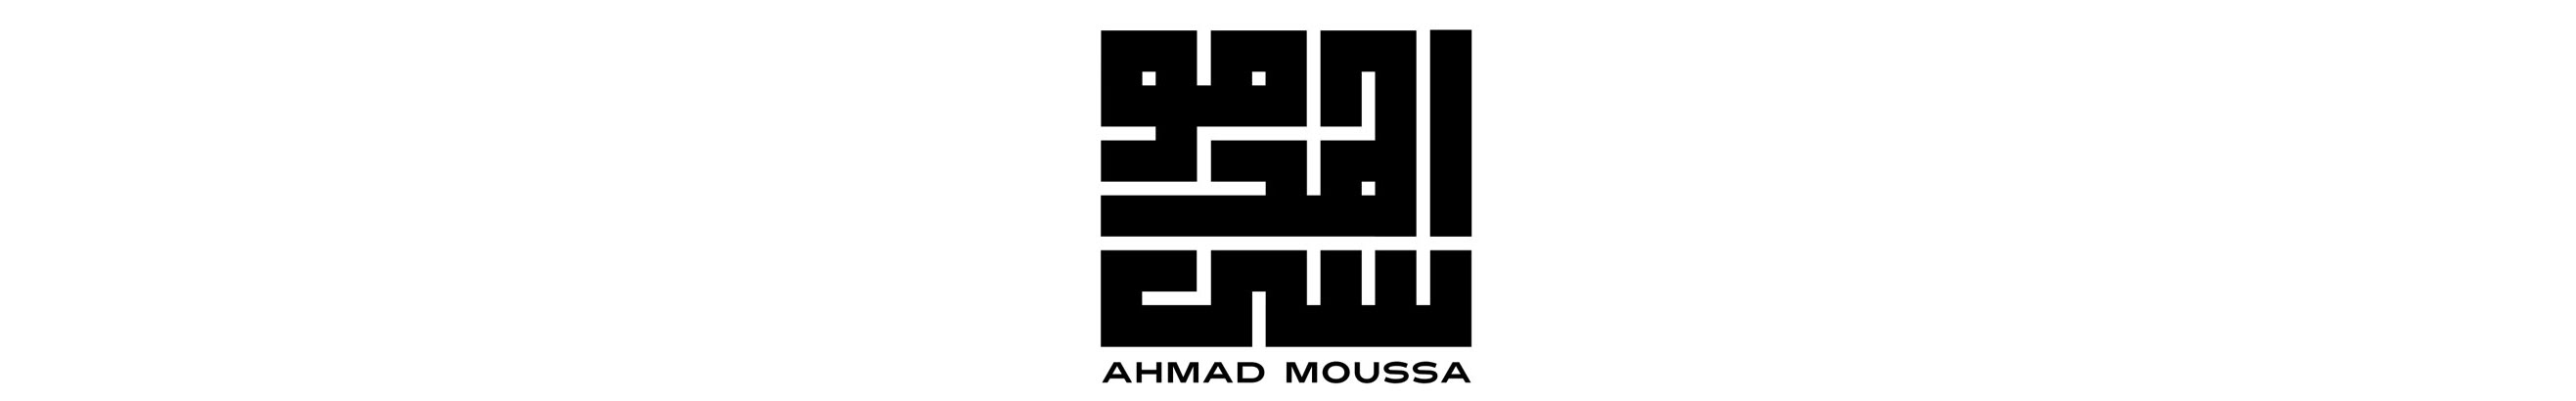 Banner de perfil de Ahmad Moussa